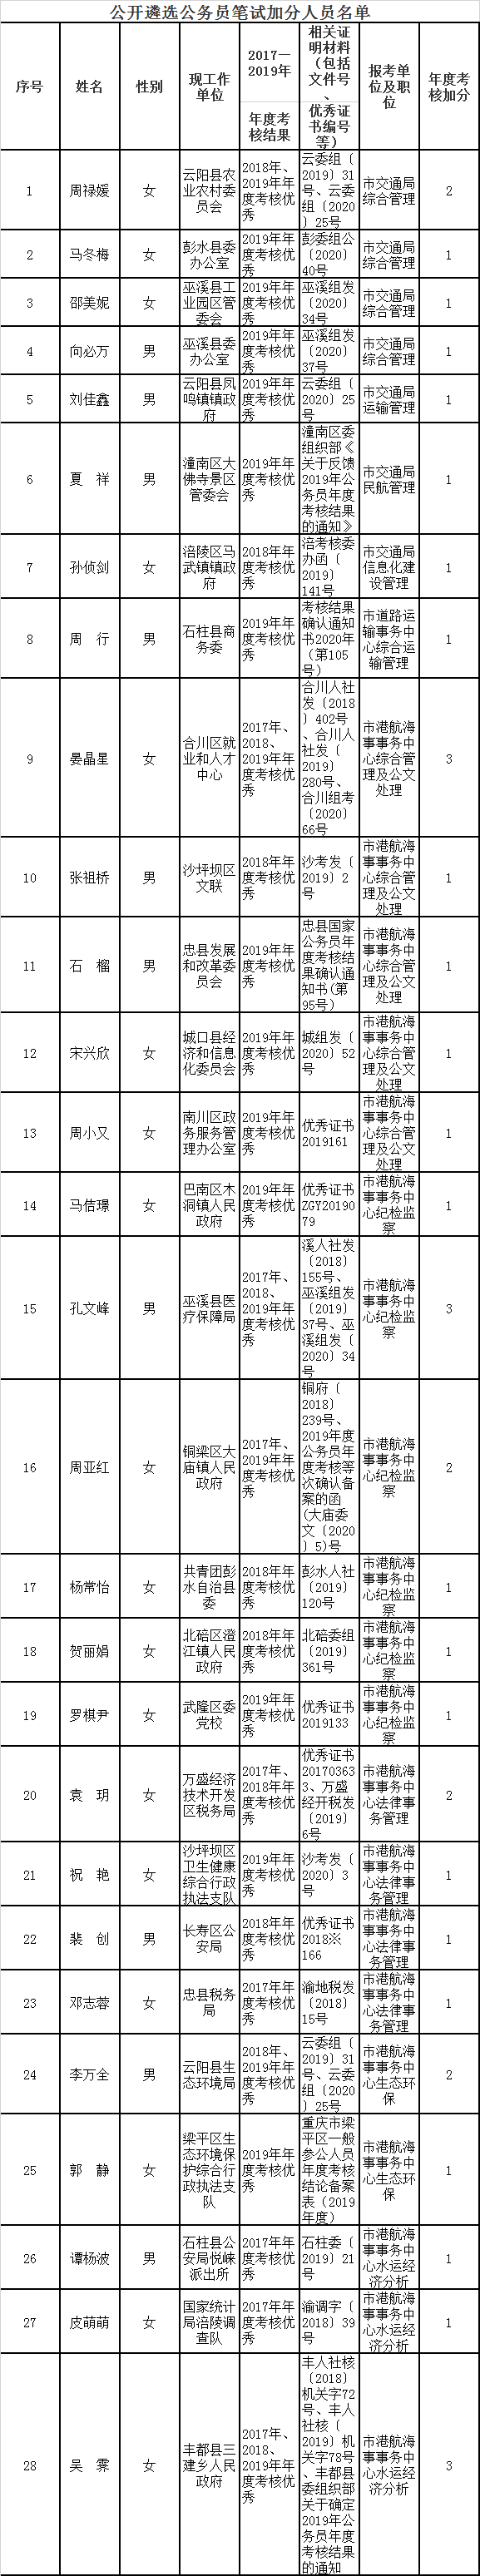 重庆市交通局2020年公开遴选笔试加分人员名单.png